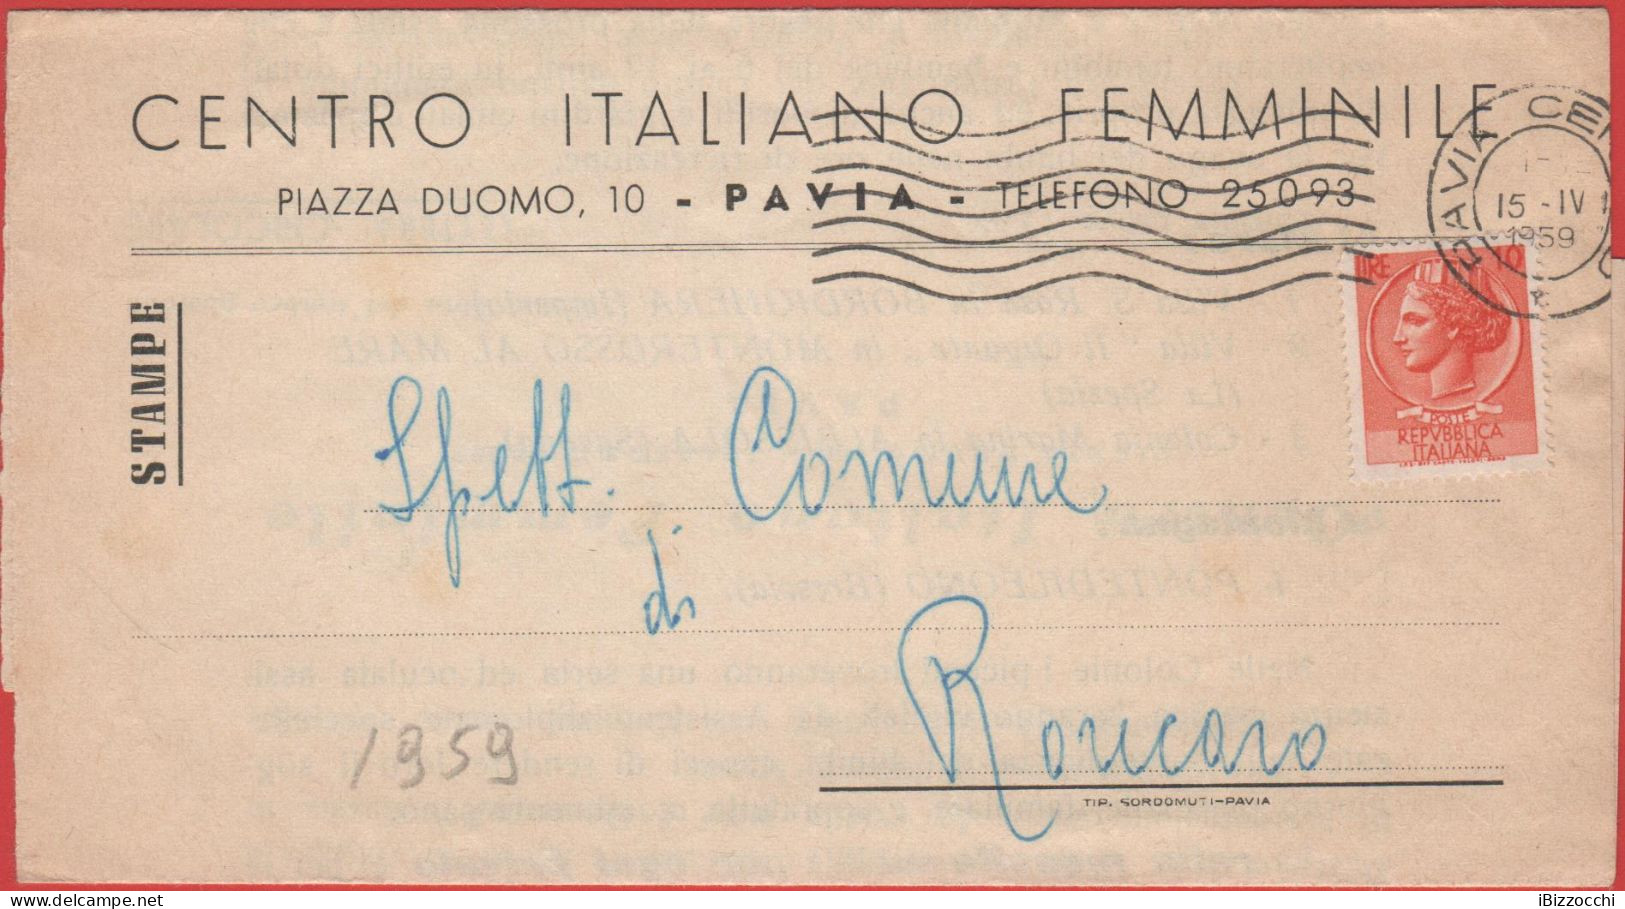 ITALIA - Storia Postale Repubblica - 1959 - 10 Antica Moneta Siracusana (isolato) - STAMPE - Centro Italiano Femminile - - 1946-60: Poststempel